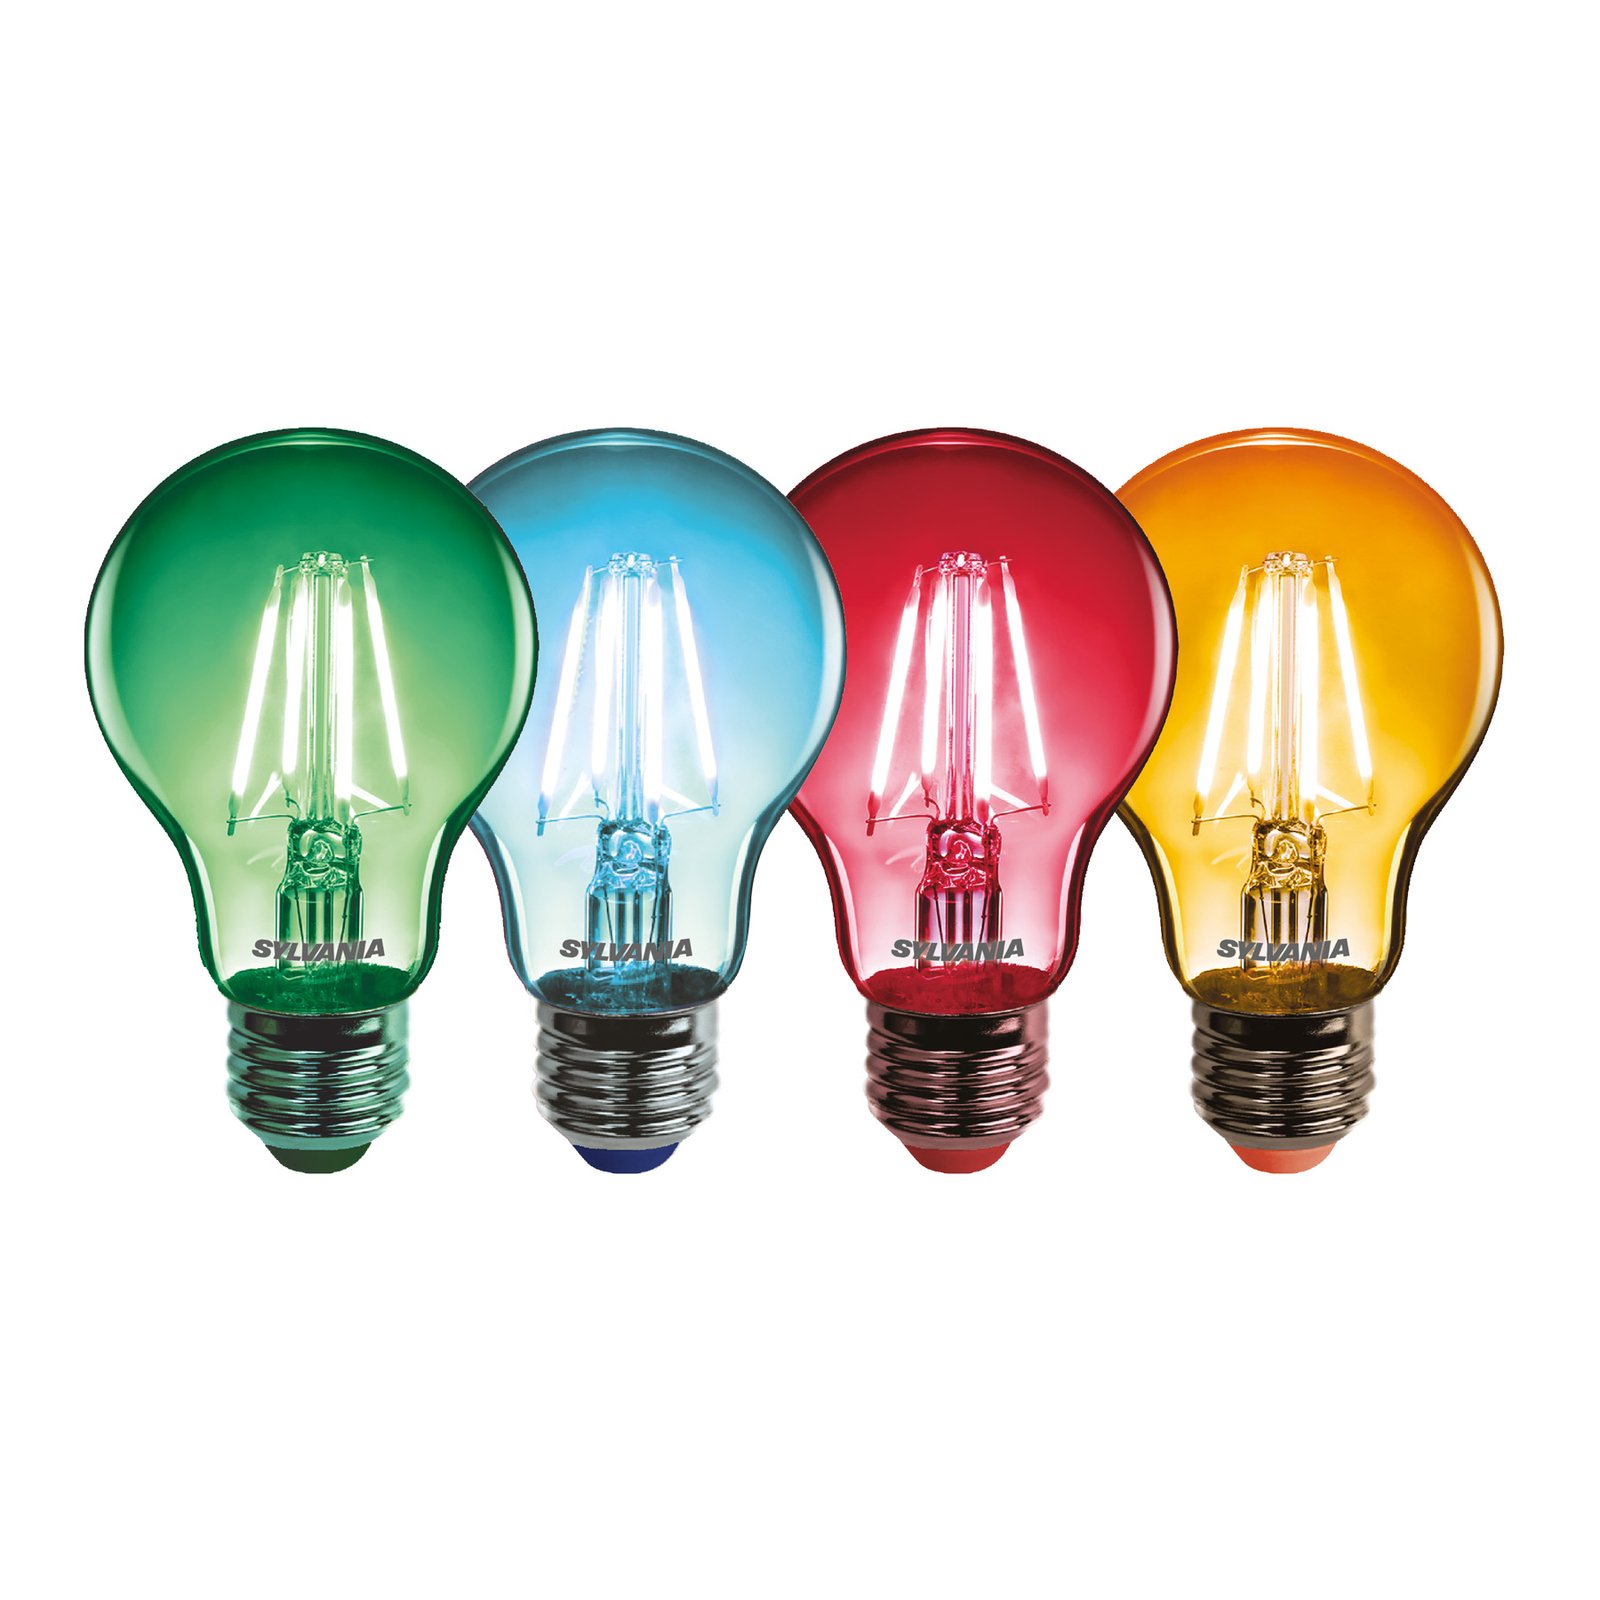 Sylvania ToLEDo rétro ampoule LED E27 4,1 W par 4